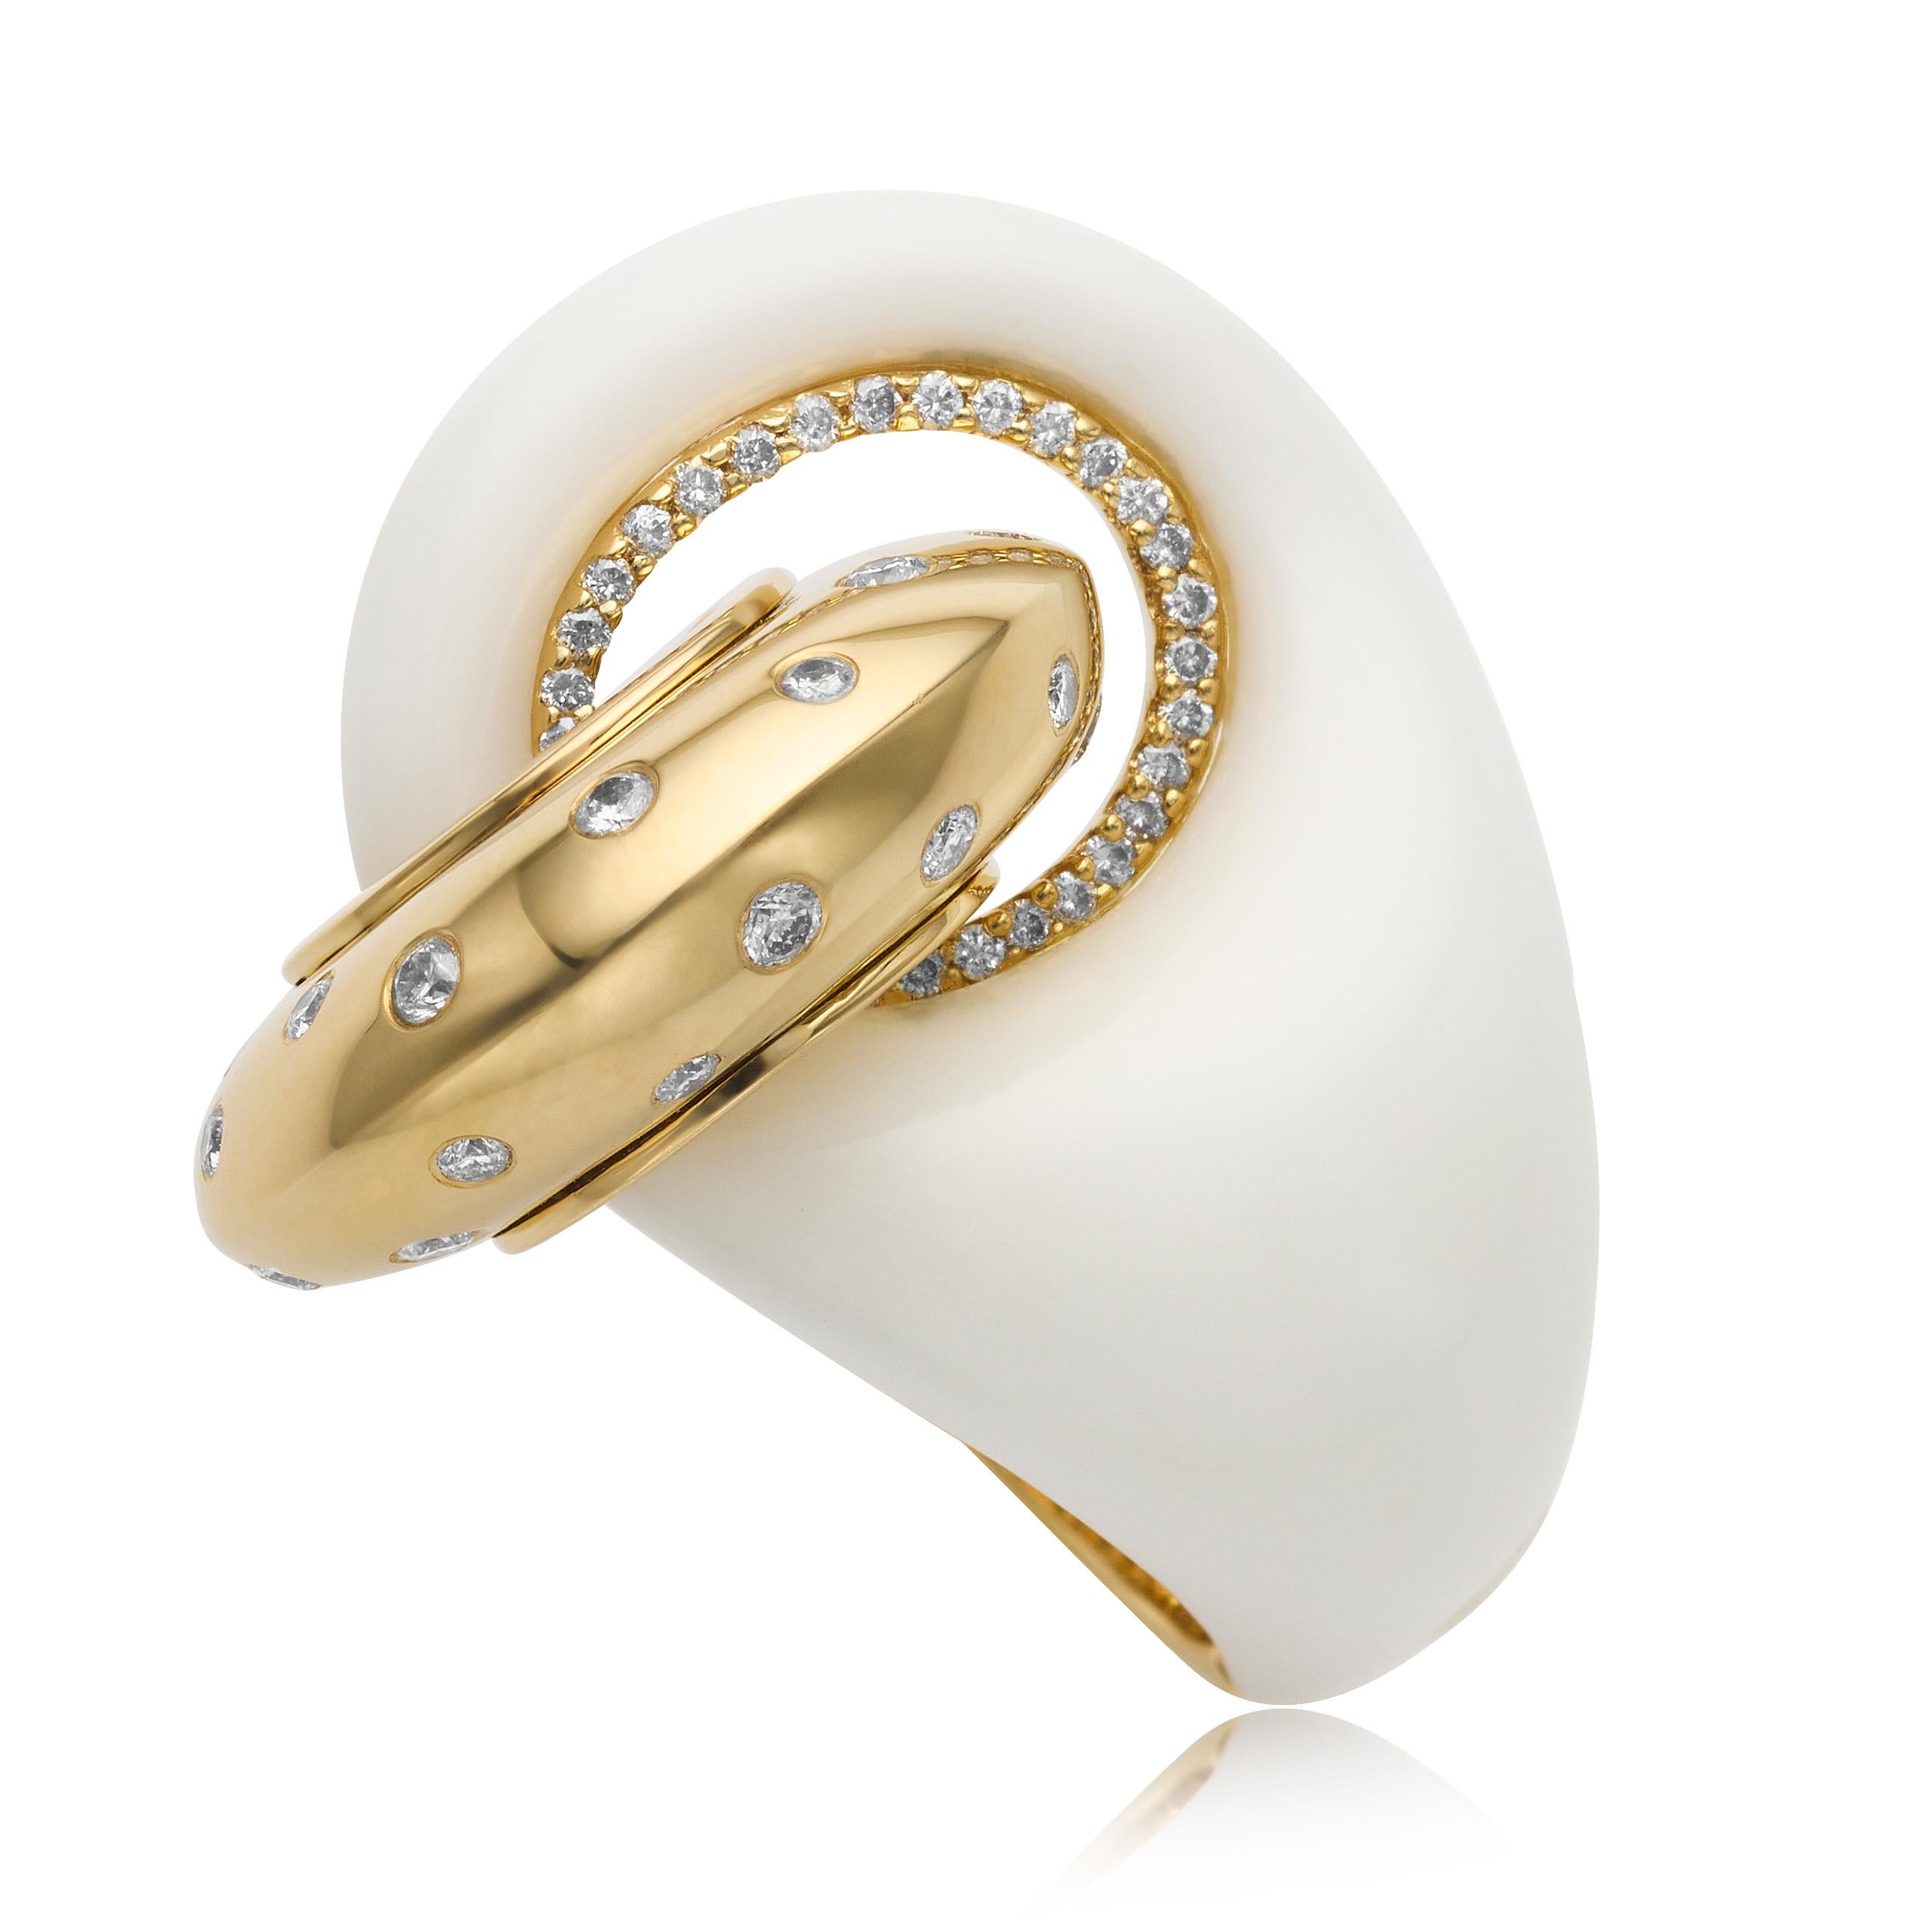 Aus der Eiseman Estate Jewelry Collection, ca. 2015, 18 Karat Gelbgold und weißer Achat ineinandergreifender Ring. Dieser Ring ist mit 51 bündig gefassten runden Diamanten im Brillantschliff mit einem Gesamtgewicht von 0,71 Karat besetzt. Diese